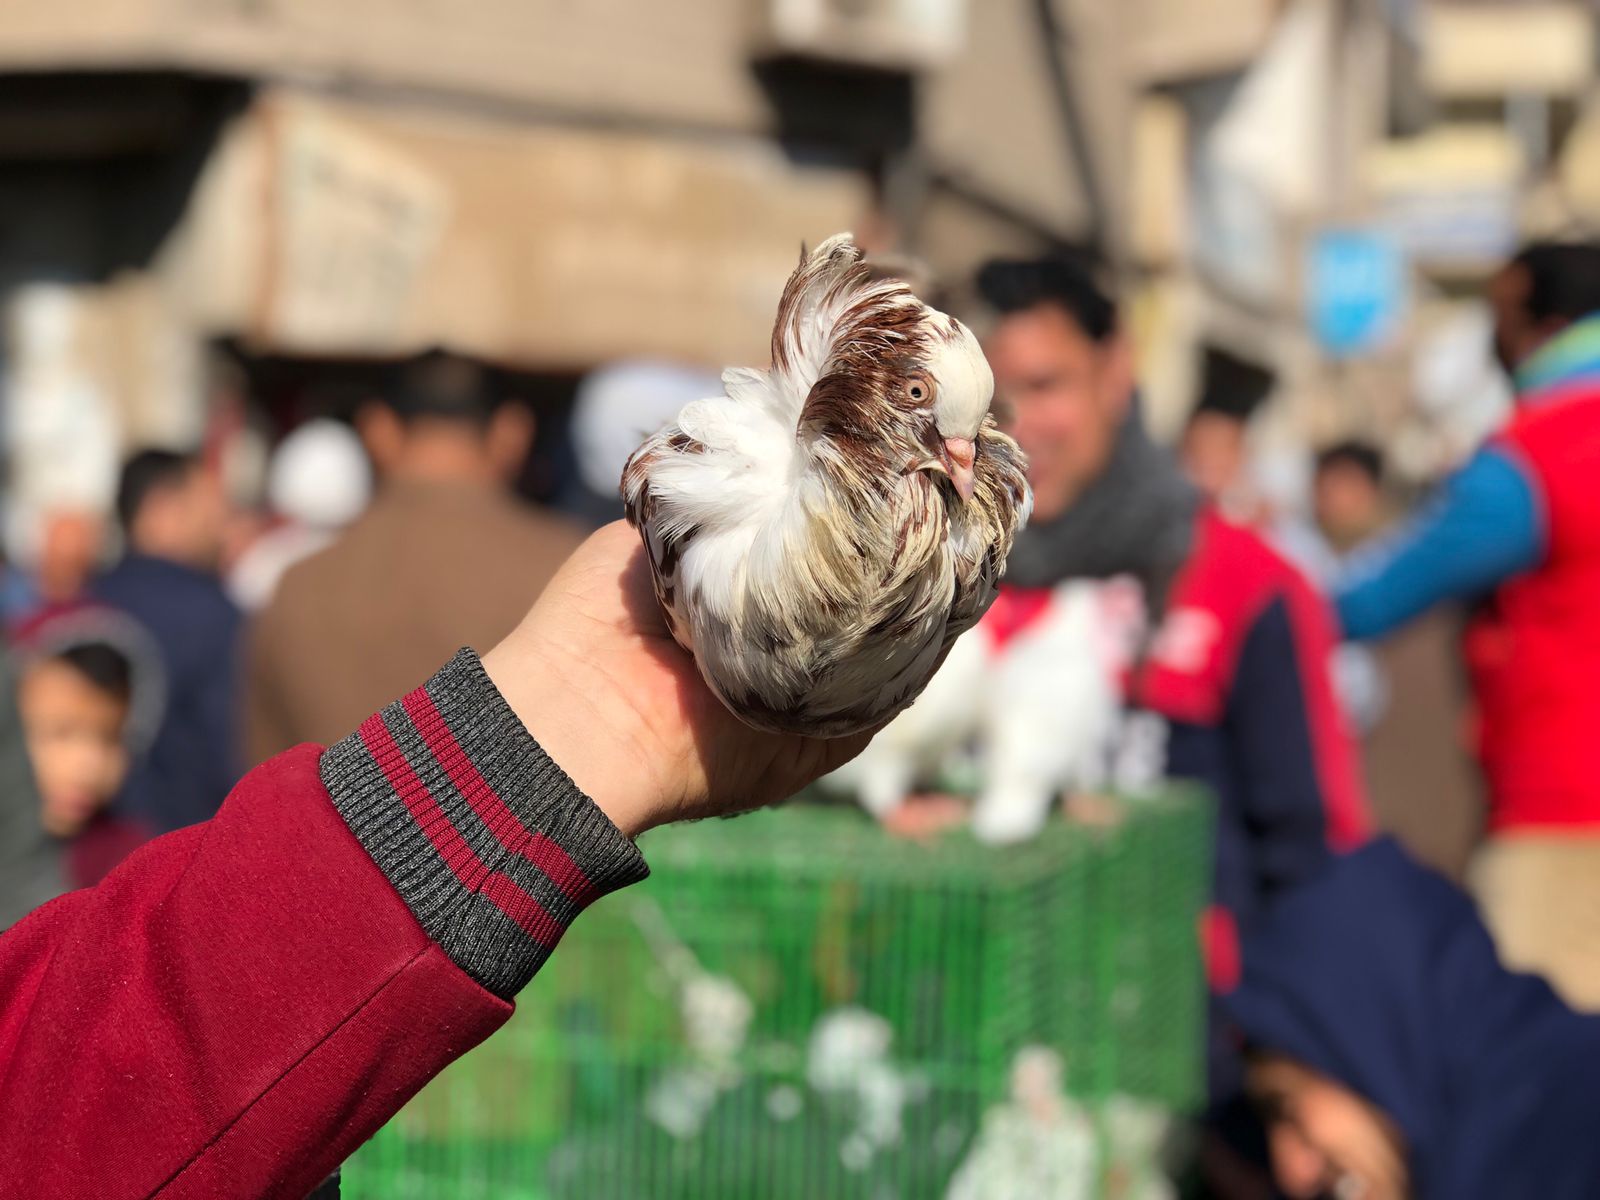  سوق الحمام بمدينة المنصورة (8)